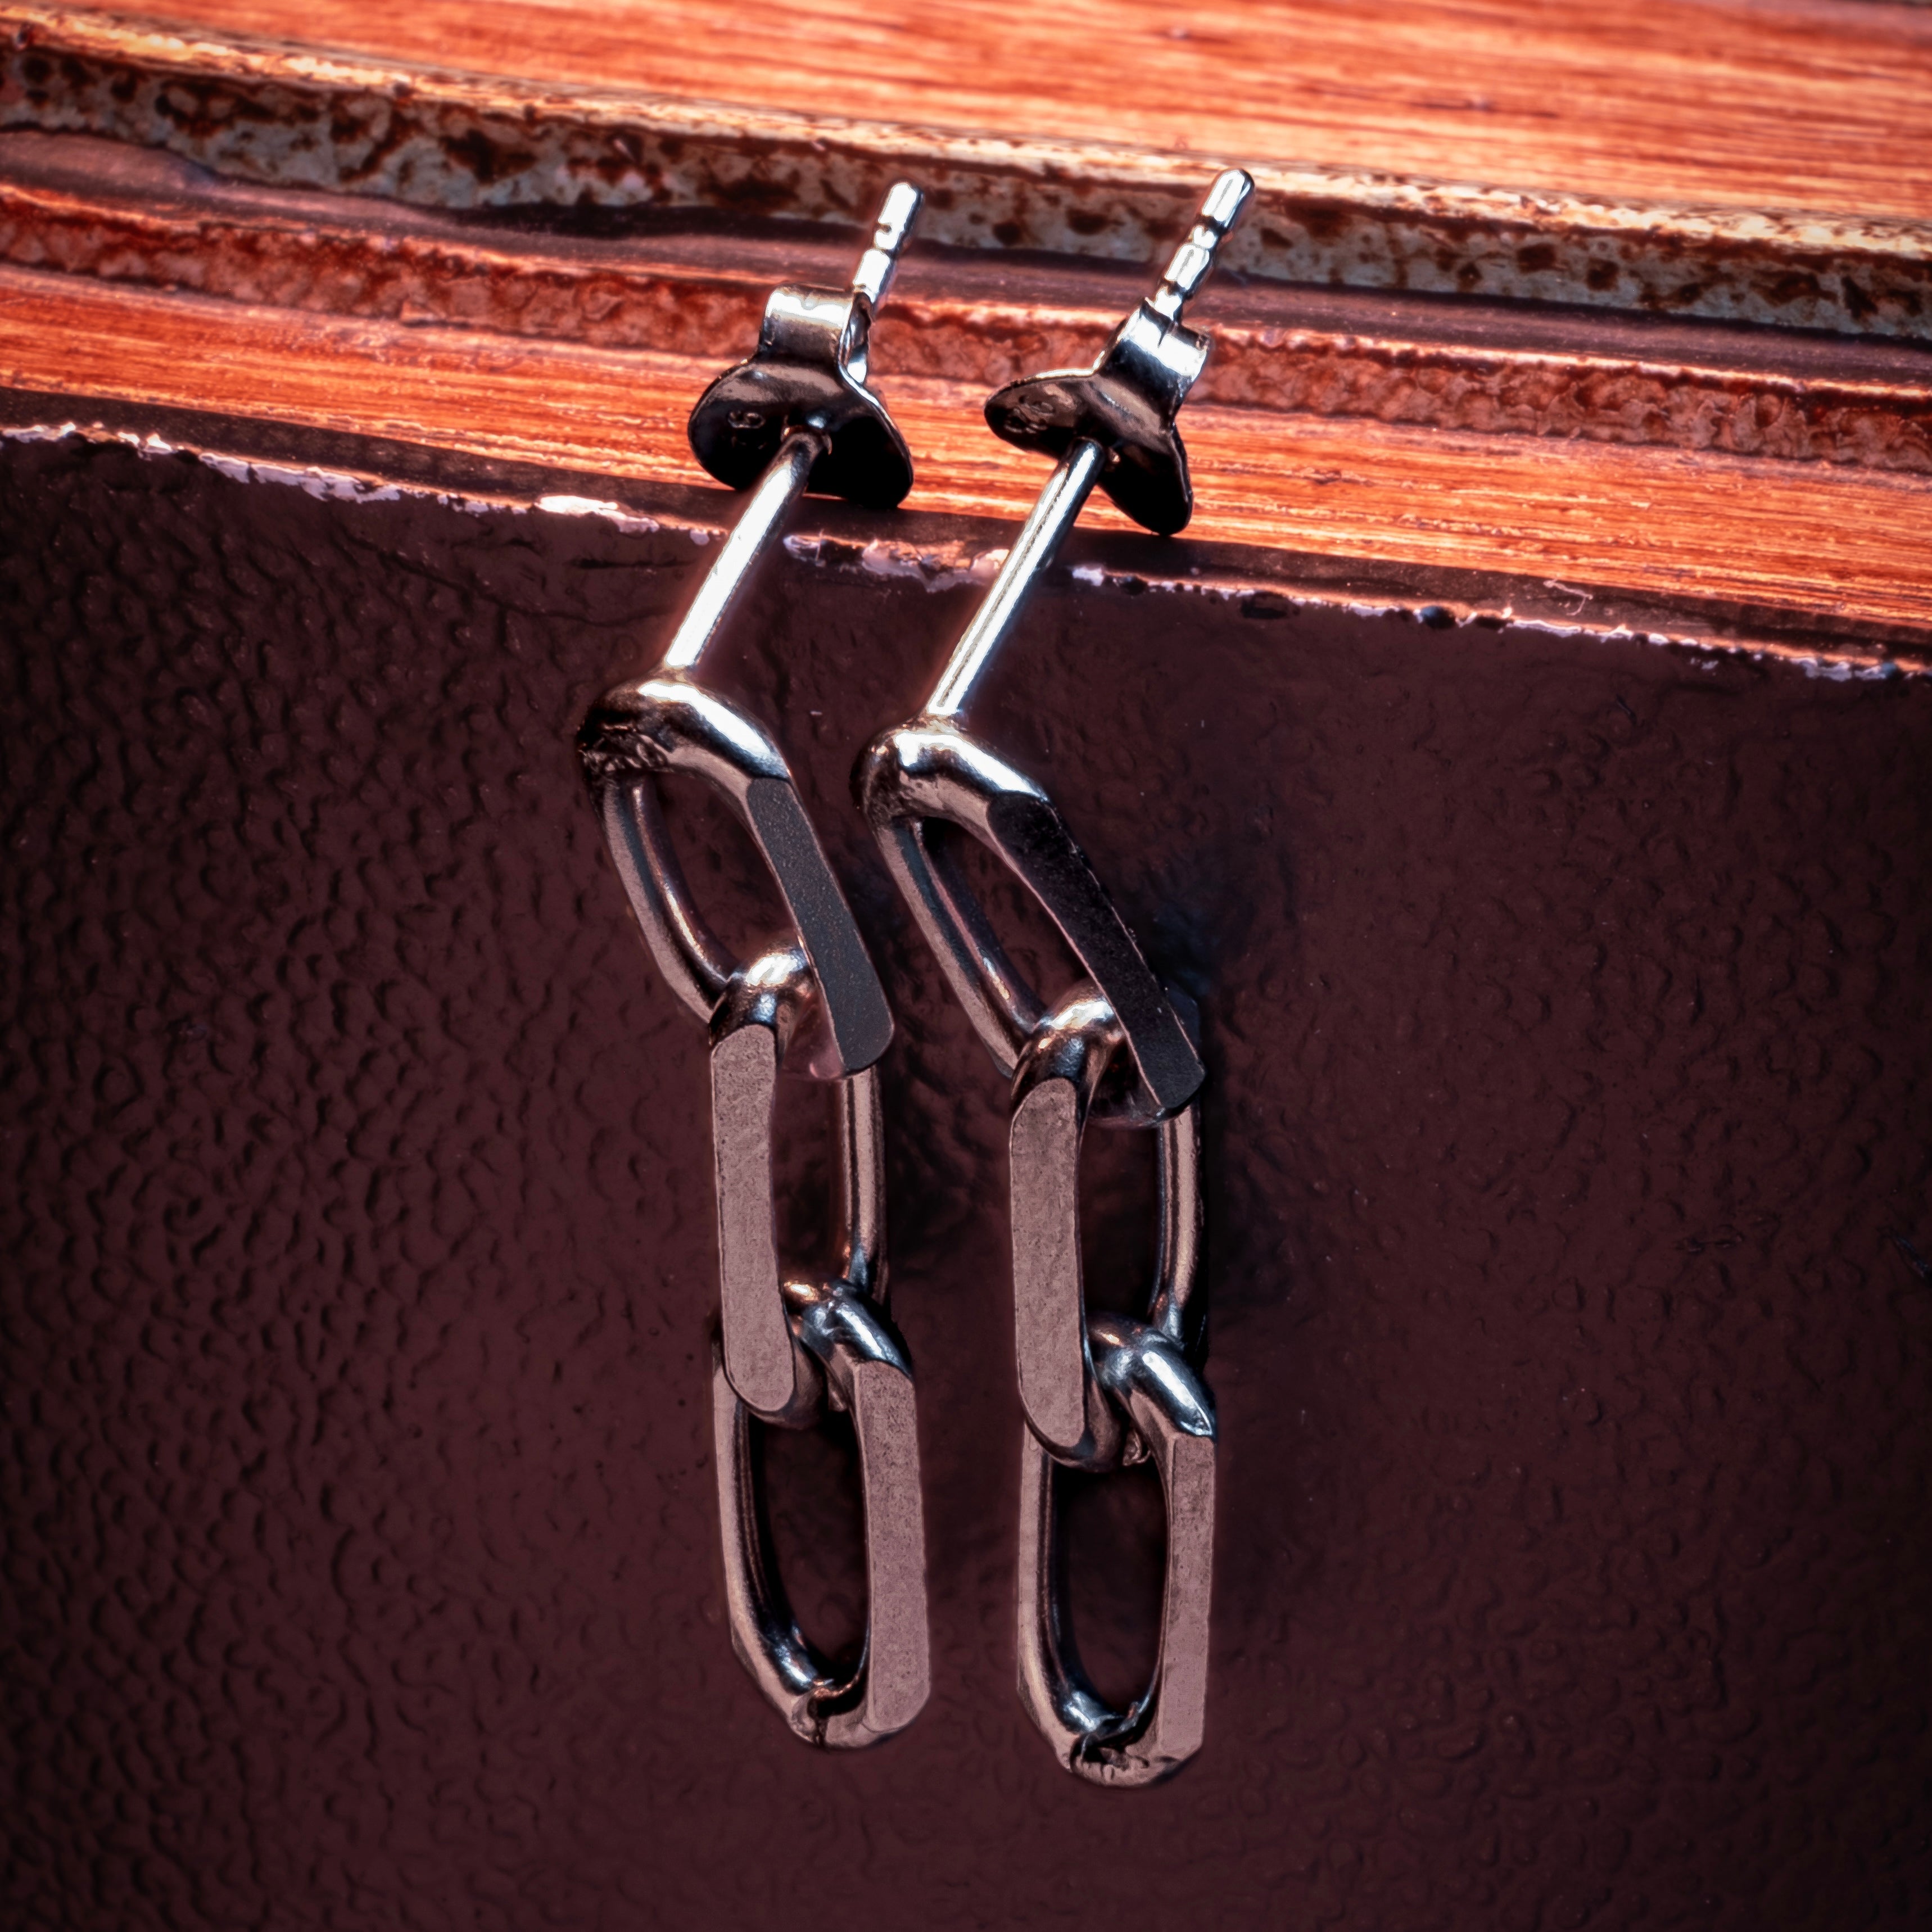 Forsa Chain Earrings in Silver